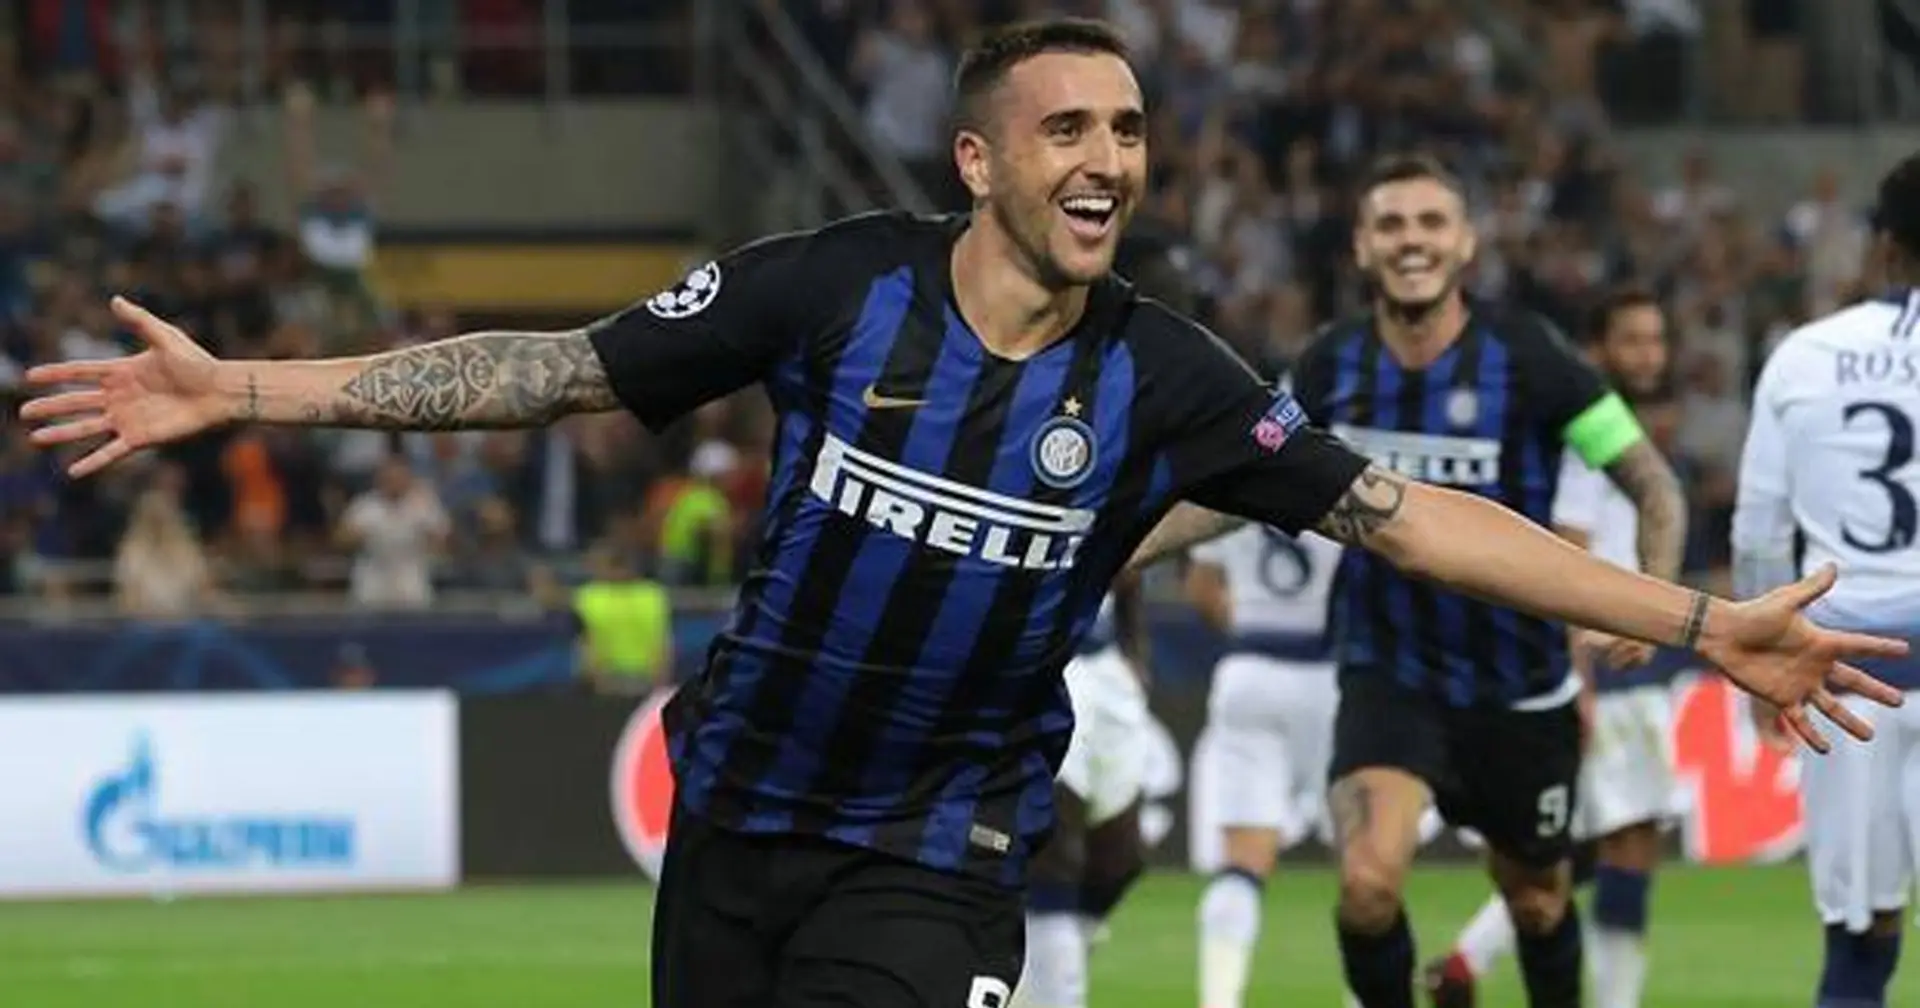 "E' sempre bello segnare gol importanti": Vecino abbatte Spalletti e ricorda i gol storici segnati per lui all'Inter